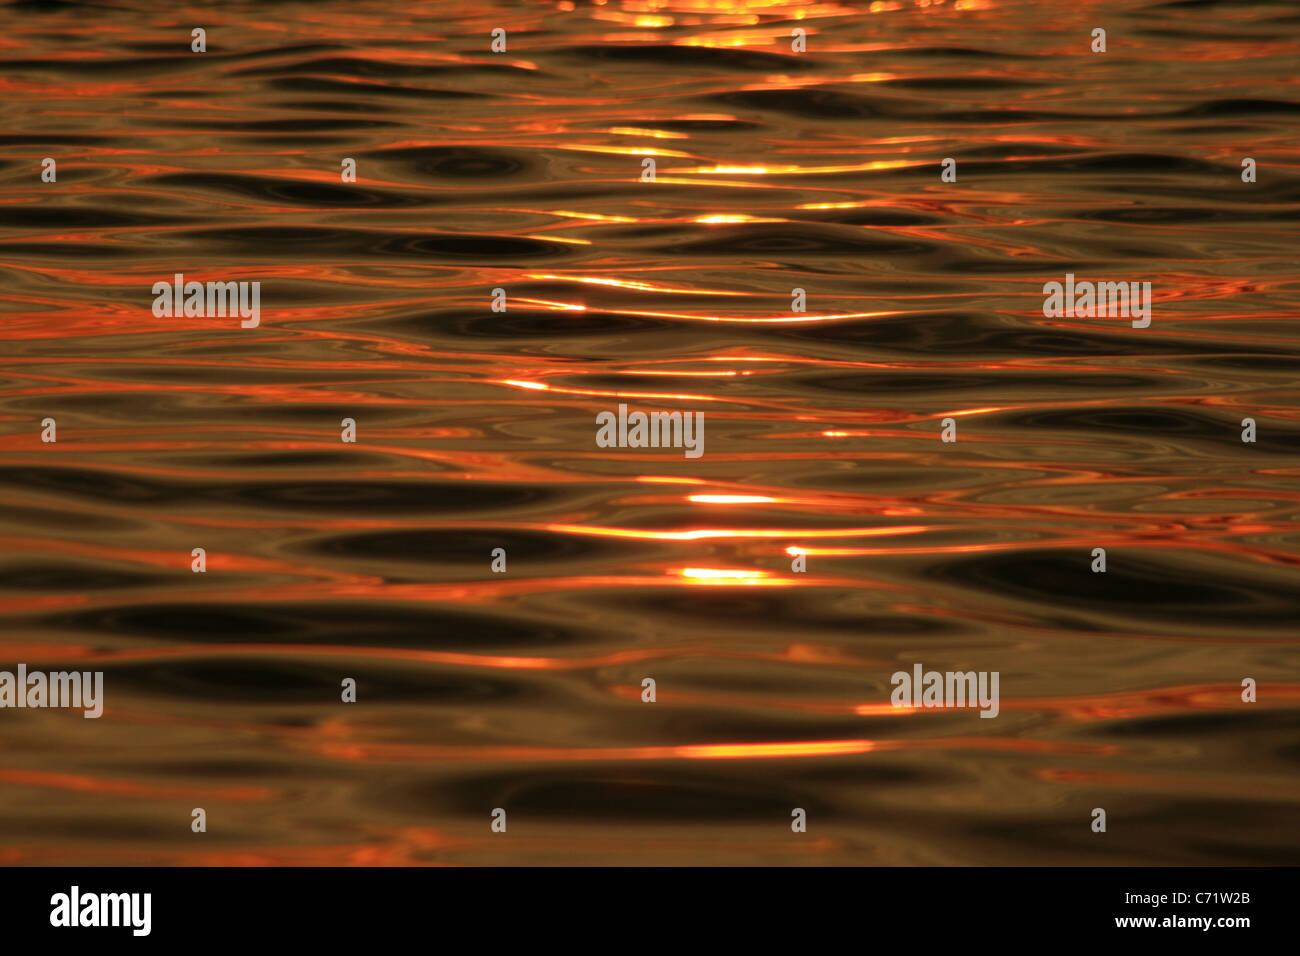 Coucher du soleil orange reflétée sur l'eau avec la texture d'ondulation Banque D'Images